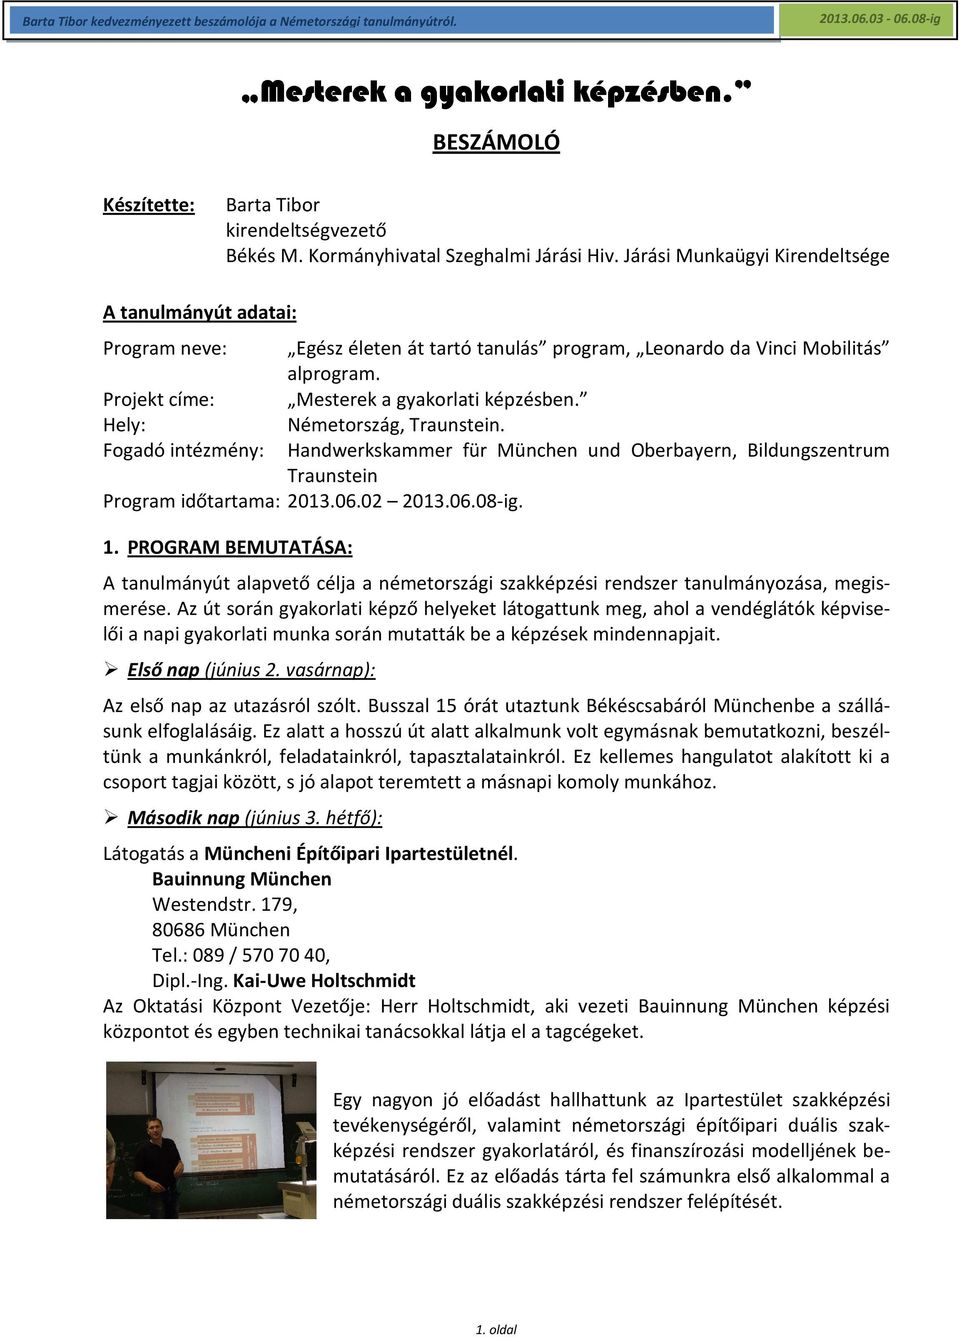 Hely: Németország, Traunstein. Fogadó intézmény: Handwerkskammer für München und Oberbayern, Bildungszentrum Traunstein Program időtartama: 2013.06.02 2013.06.08-ig. 1.